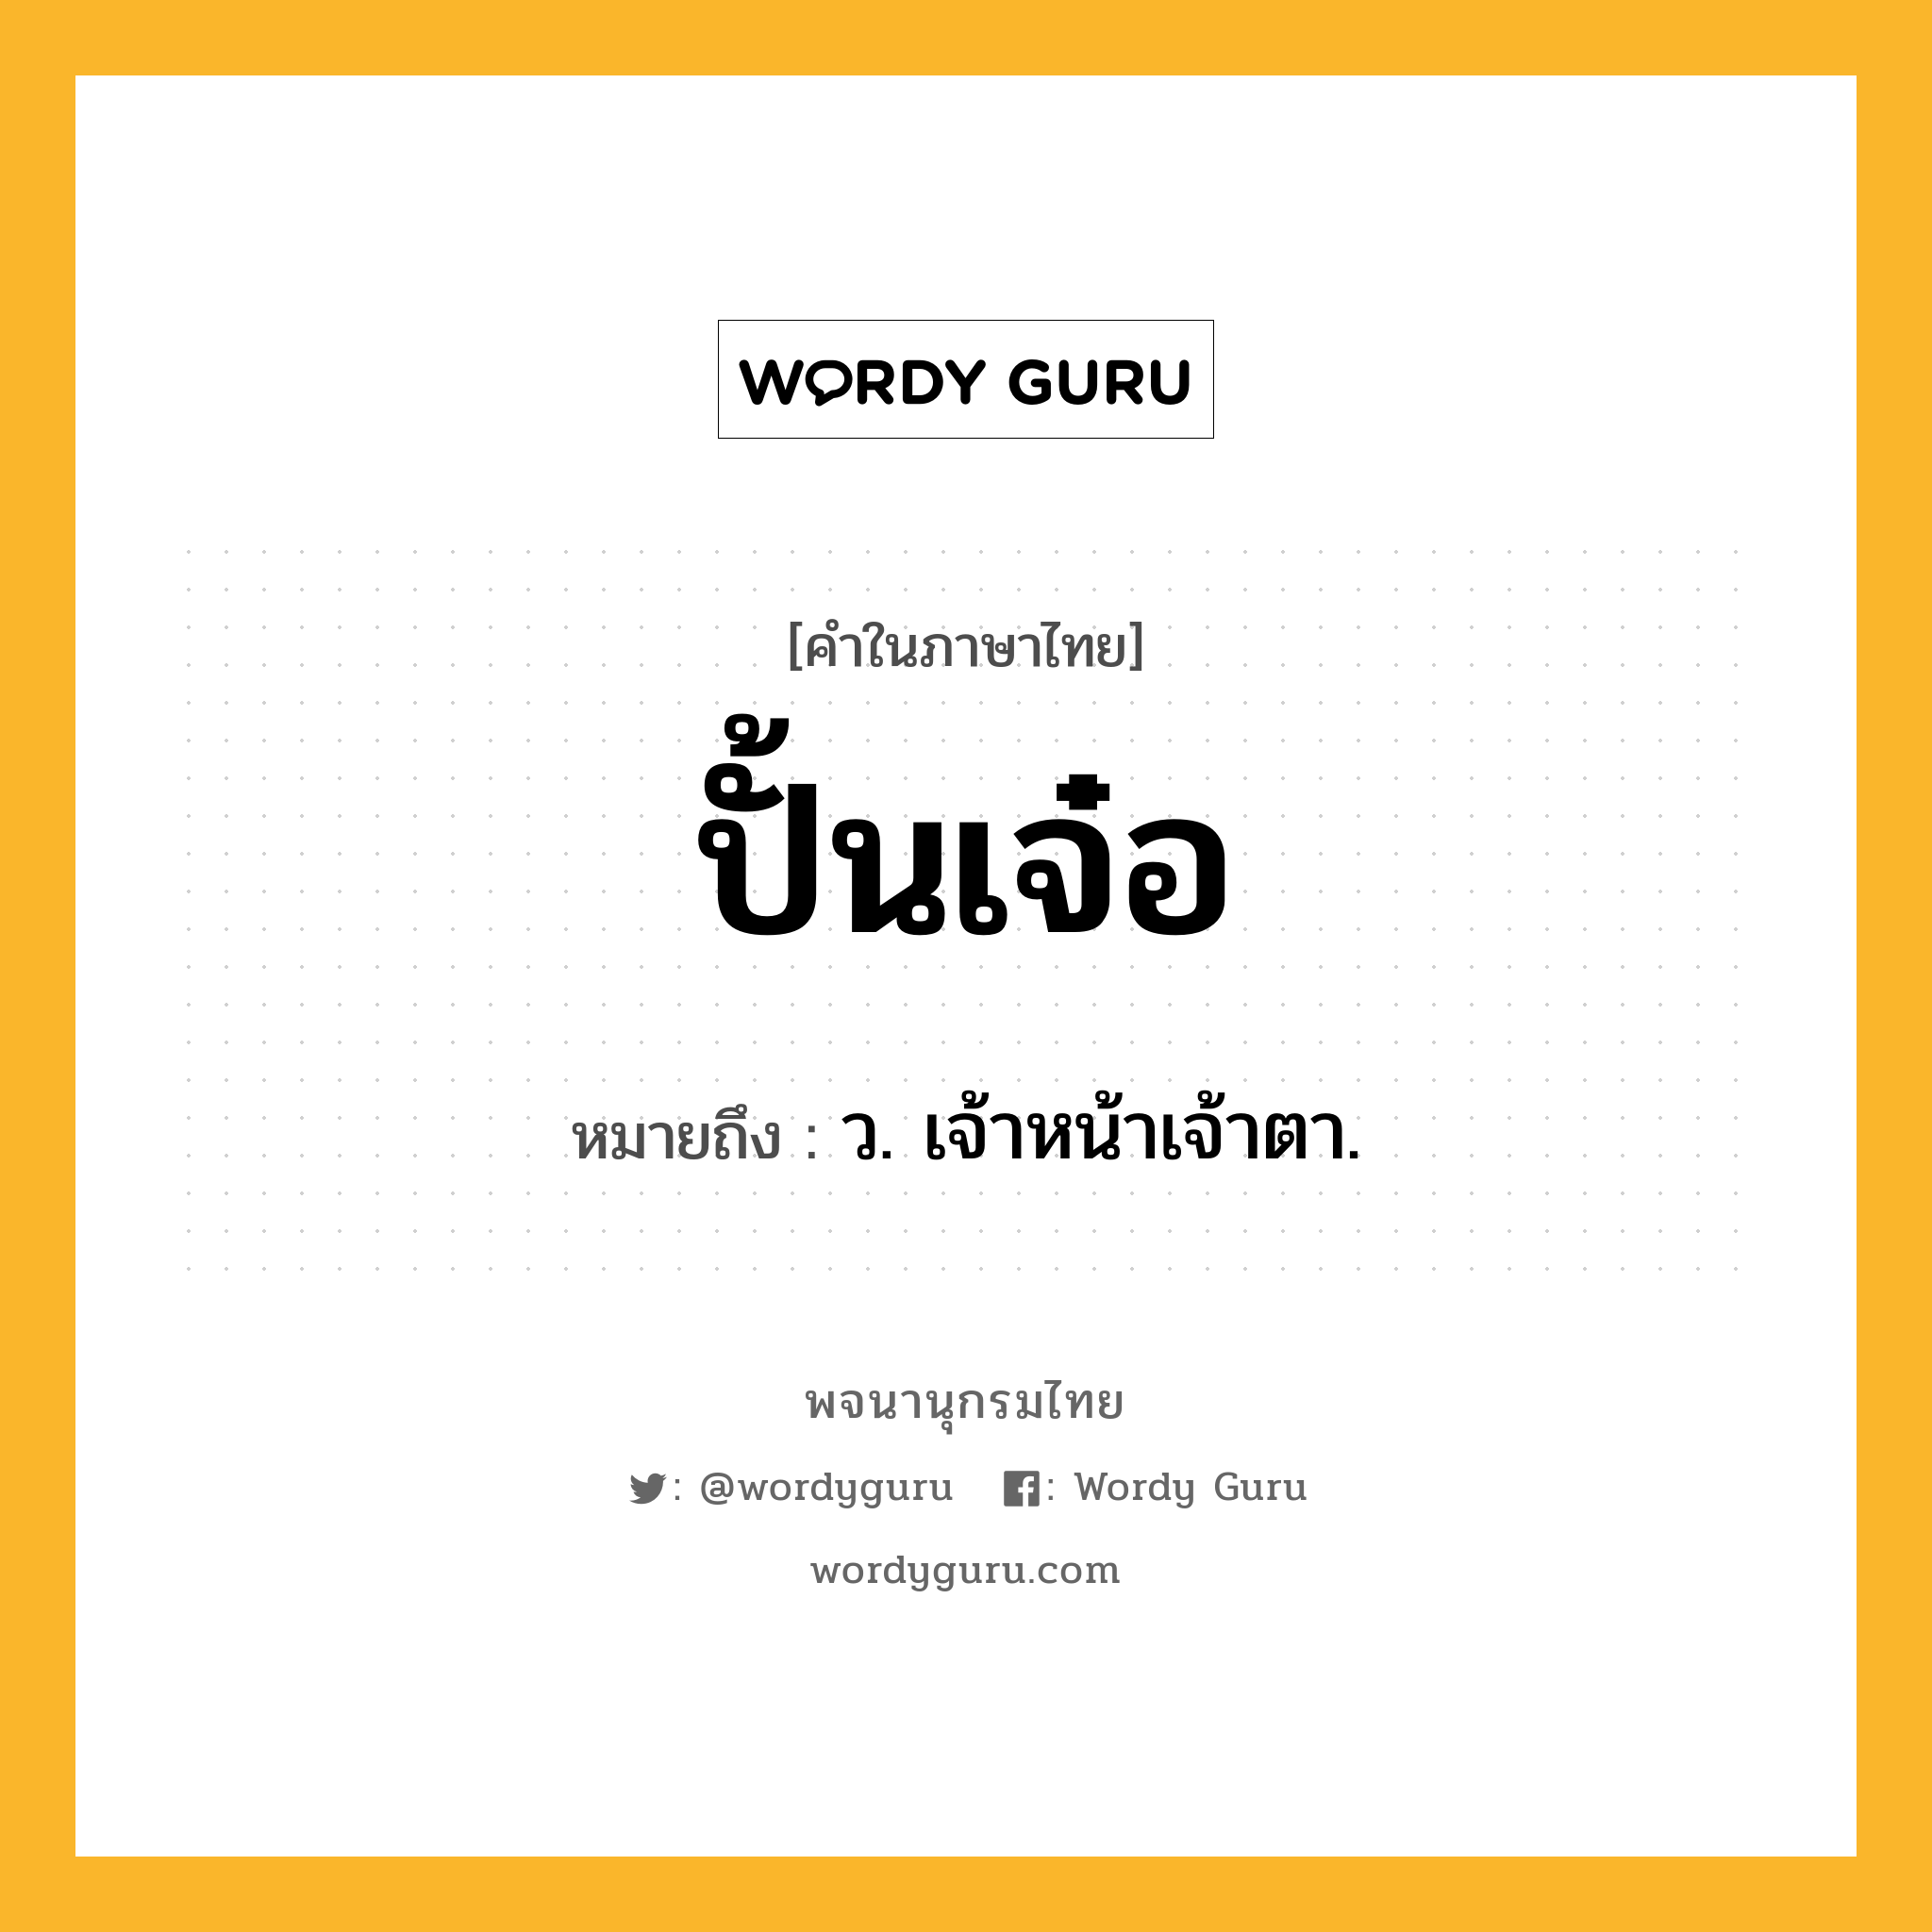 ปั้นเจ๋อ หมายถึงอะไร?, คำในภาษาไทย ปั้นเจ๋อ หมายถึง ว. เจ้าหน้าเจ้าตา.